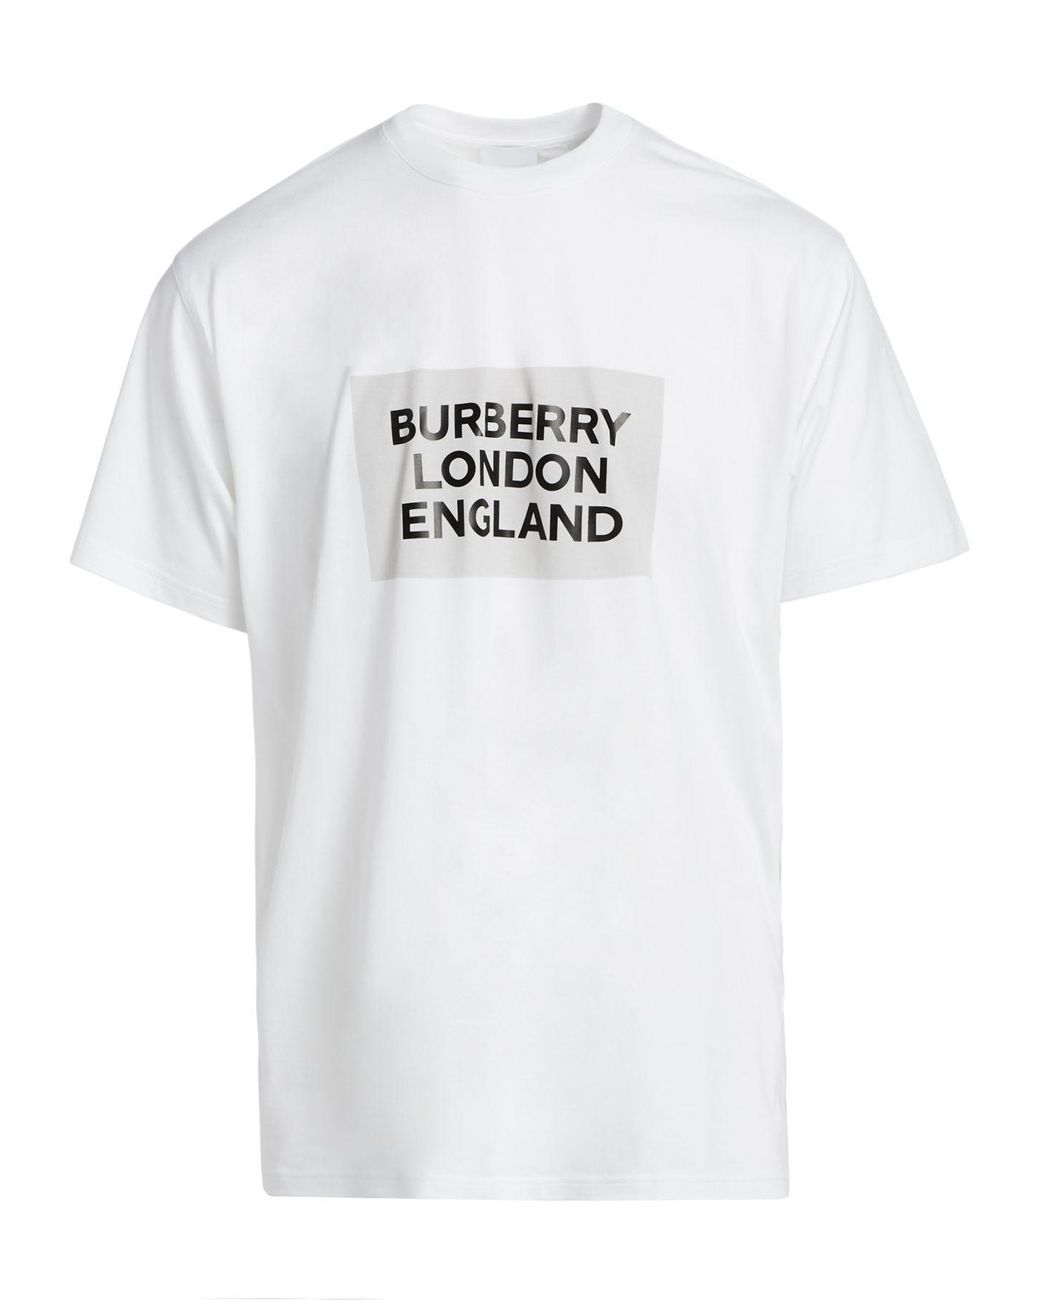 【ていないた】 BURBERRY LONDON ENGLAND カテゴリー